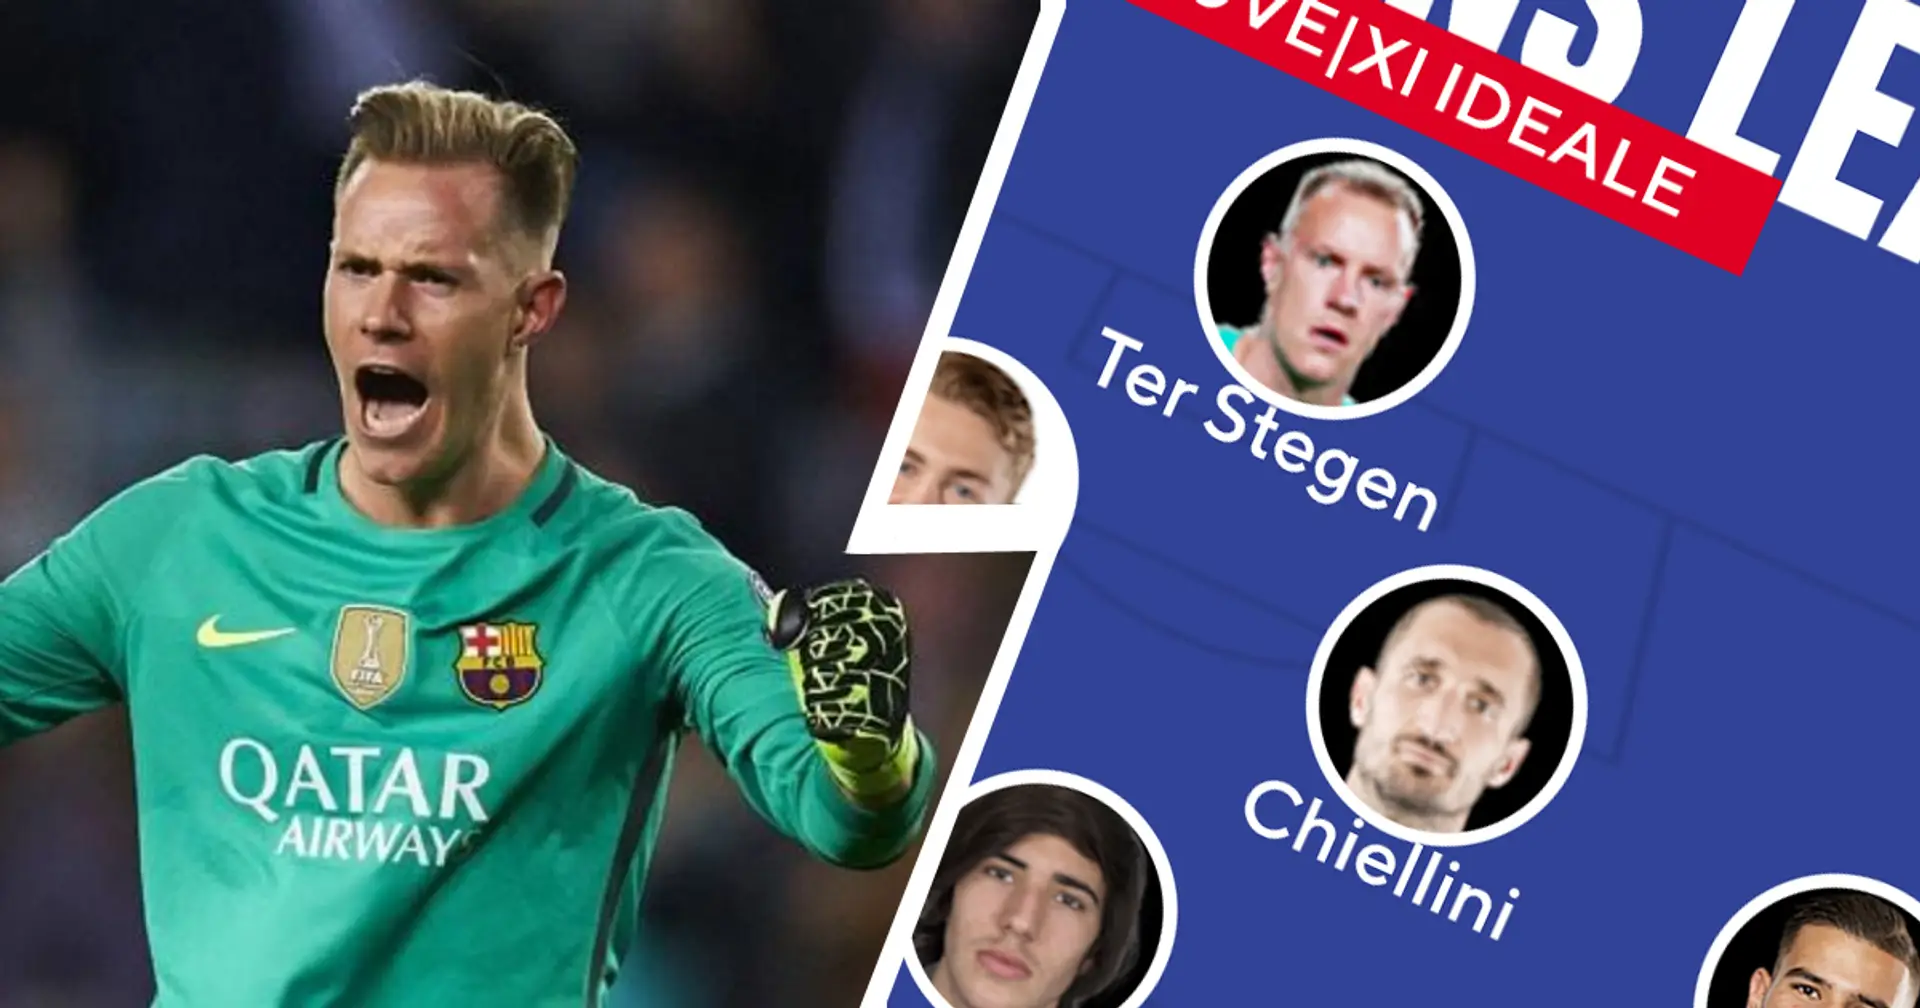 🏆"Ter Stegen, Pogba e non solo": l'XI ideale per dare l'assalto alla Champions League scelto dai tifosi bianconeri su Tribuna.com! 